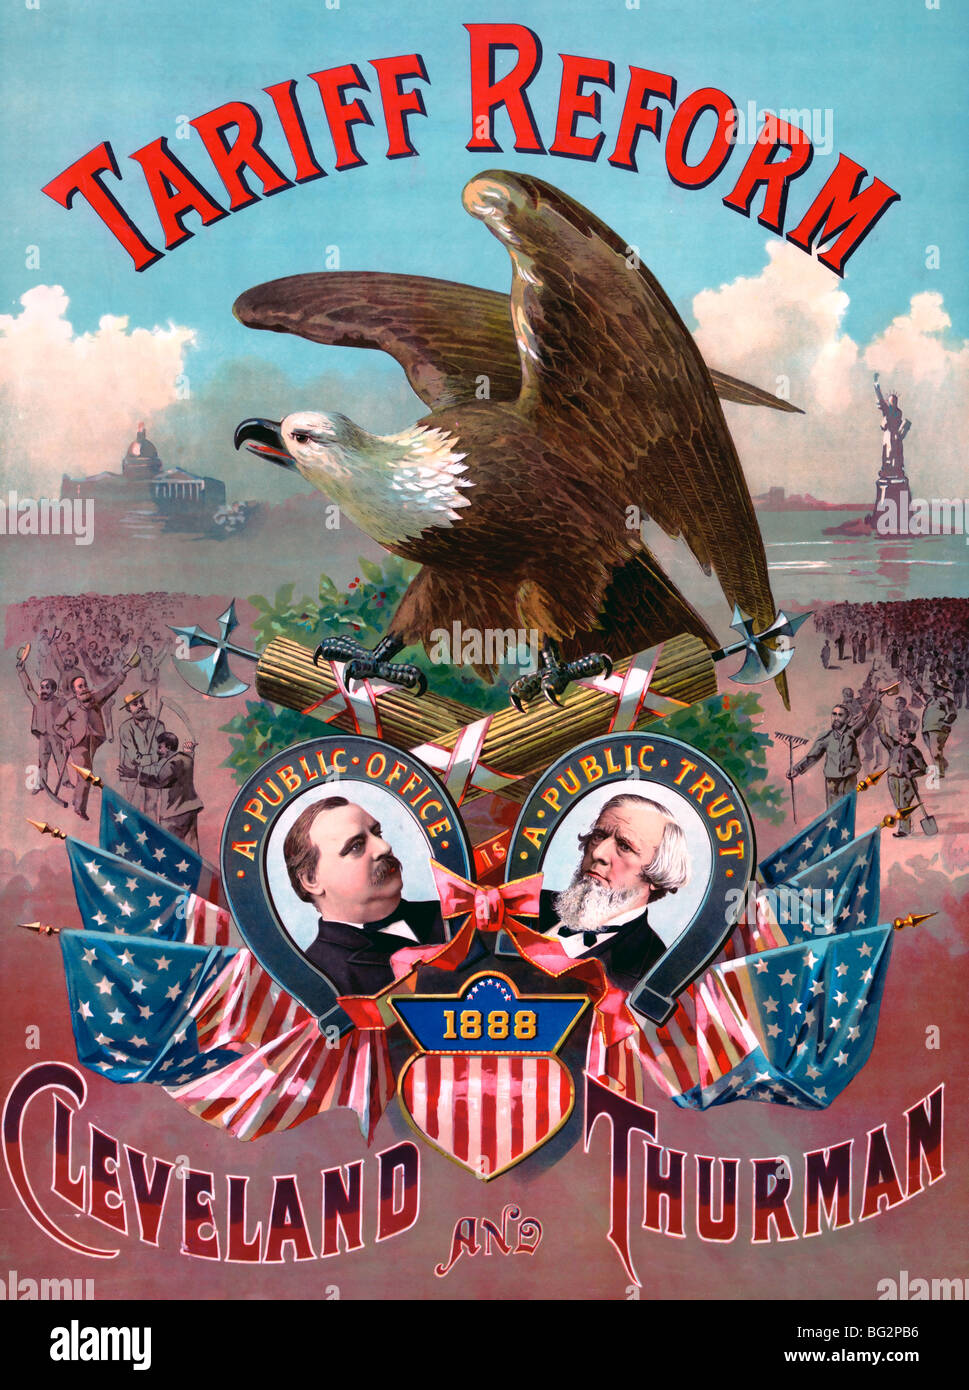 La riforma di tariffa. Cleveland e Thurman - campagna di manifesti per 1888 USA elezioni presidenziali Foto Stock